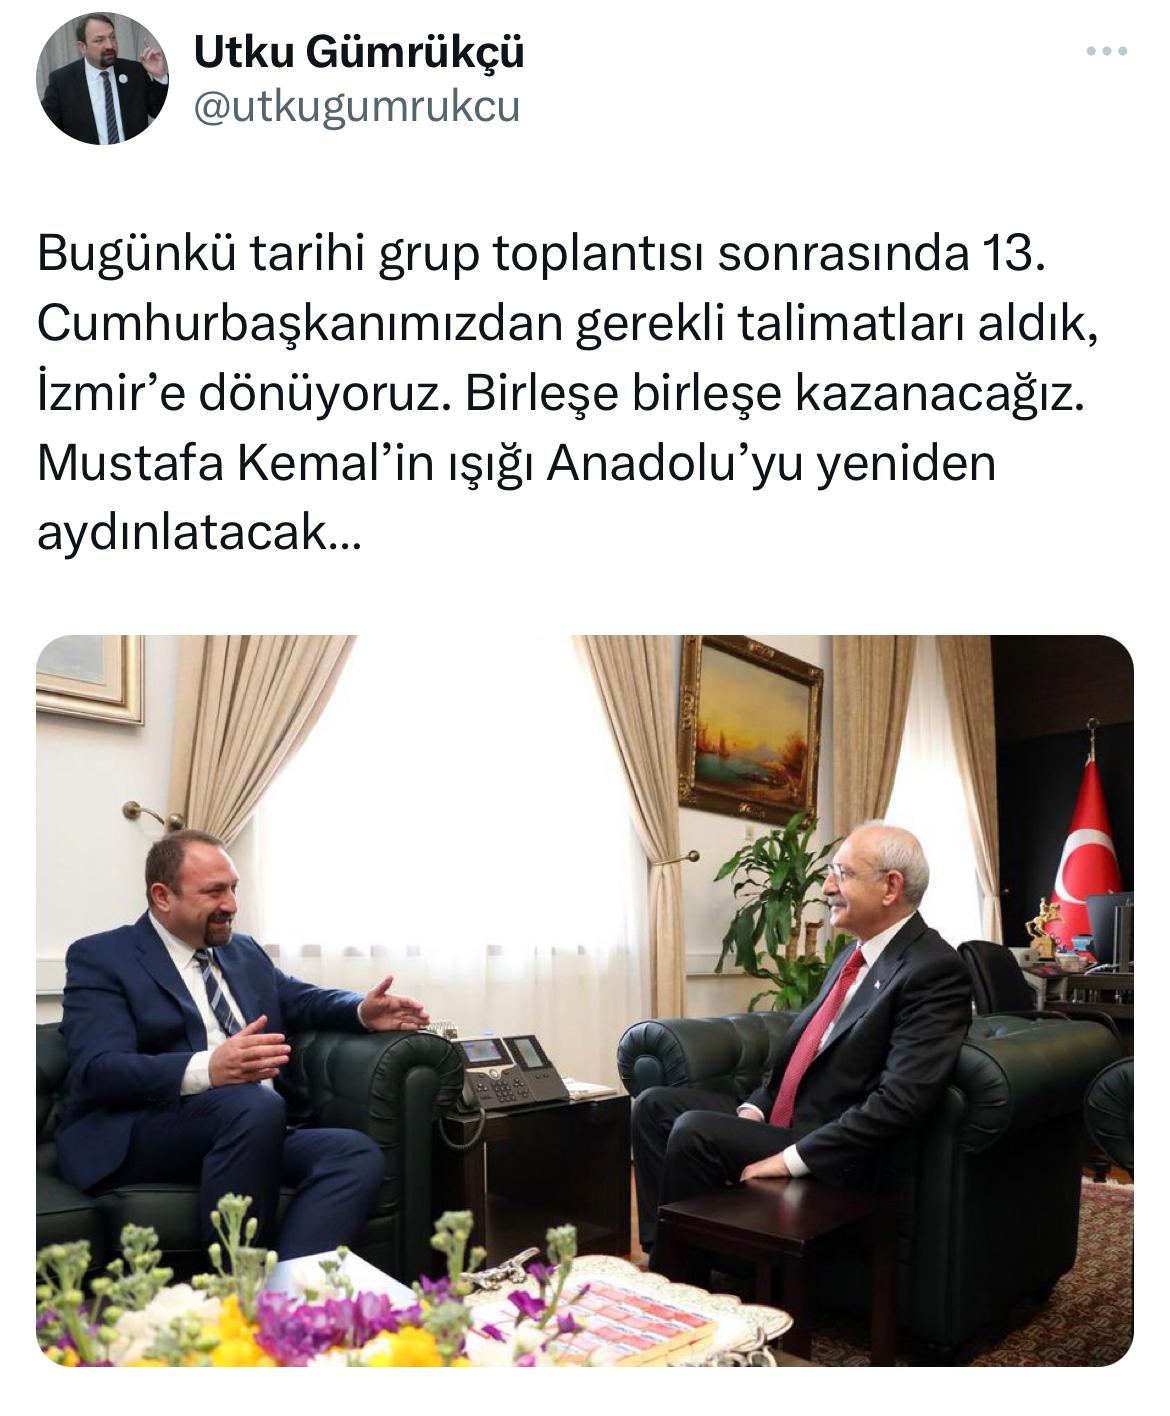 Başkan Gümrükçü'den Kılıçdaroğlu mesajı: Daima Omuz Omuza